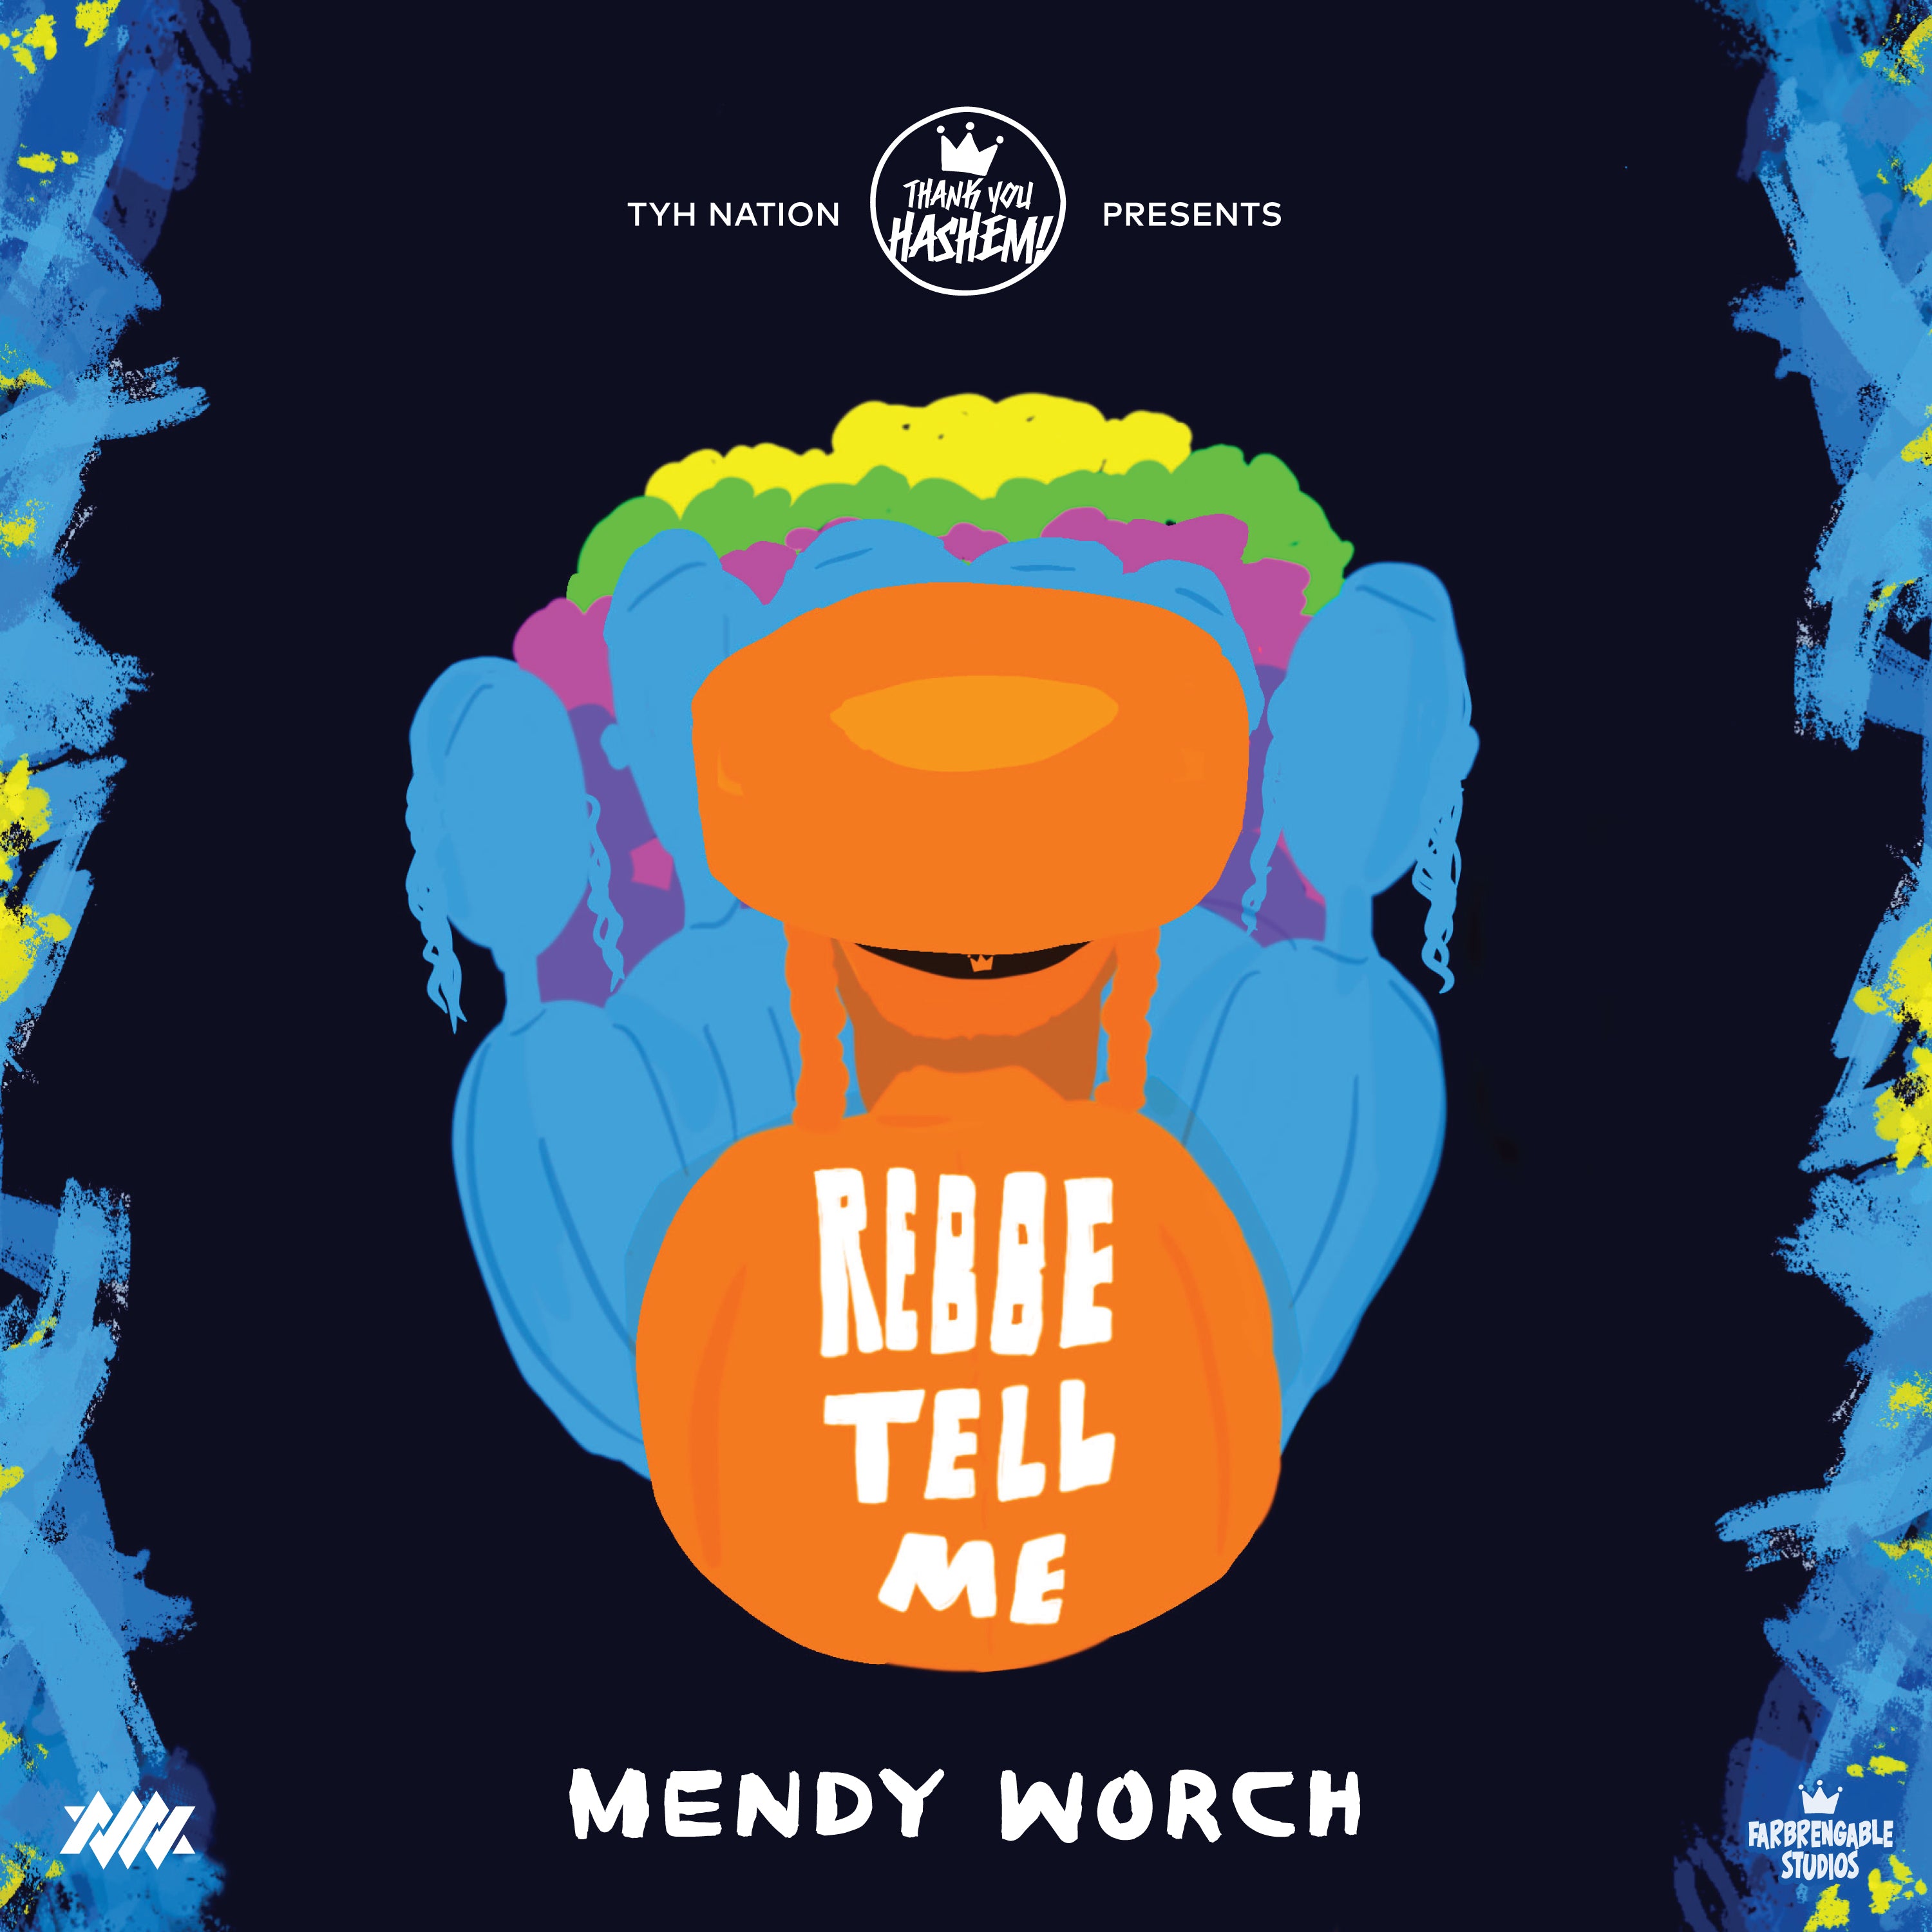 Mendy Worch - Rebbe Tell Me (Single)